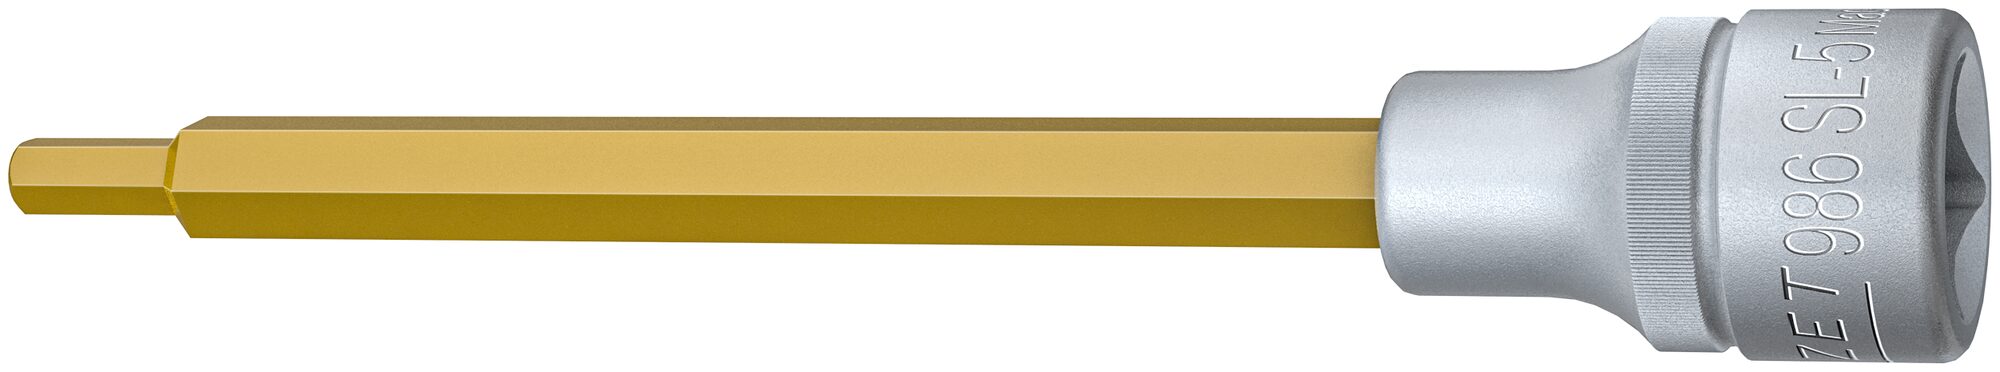 HAZET Schraubendreher-Steckschlüsseleinsatz 986SL-5 · Vierkant hohl 12,5 mm (1/2 Zoll) · Innen Sechskant Profil · 5 mm